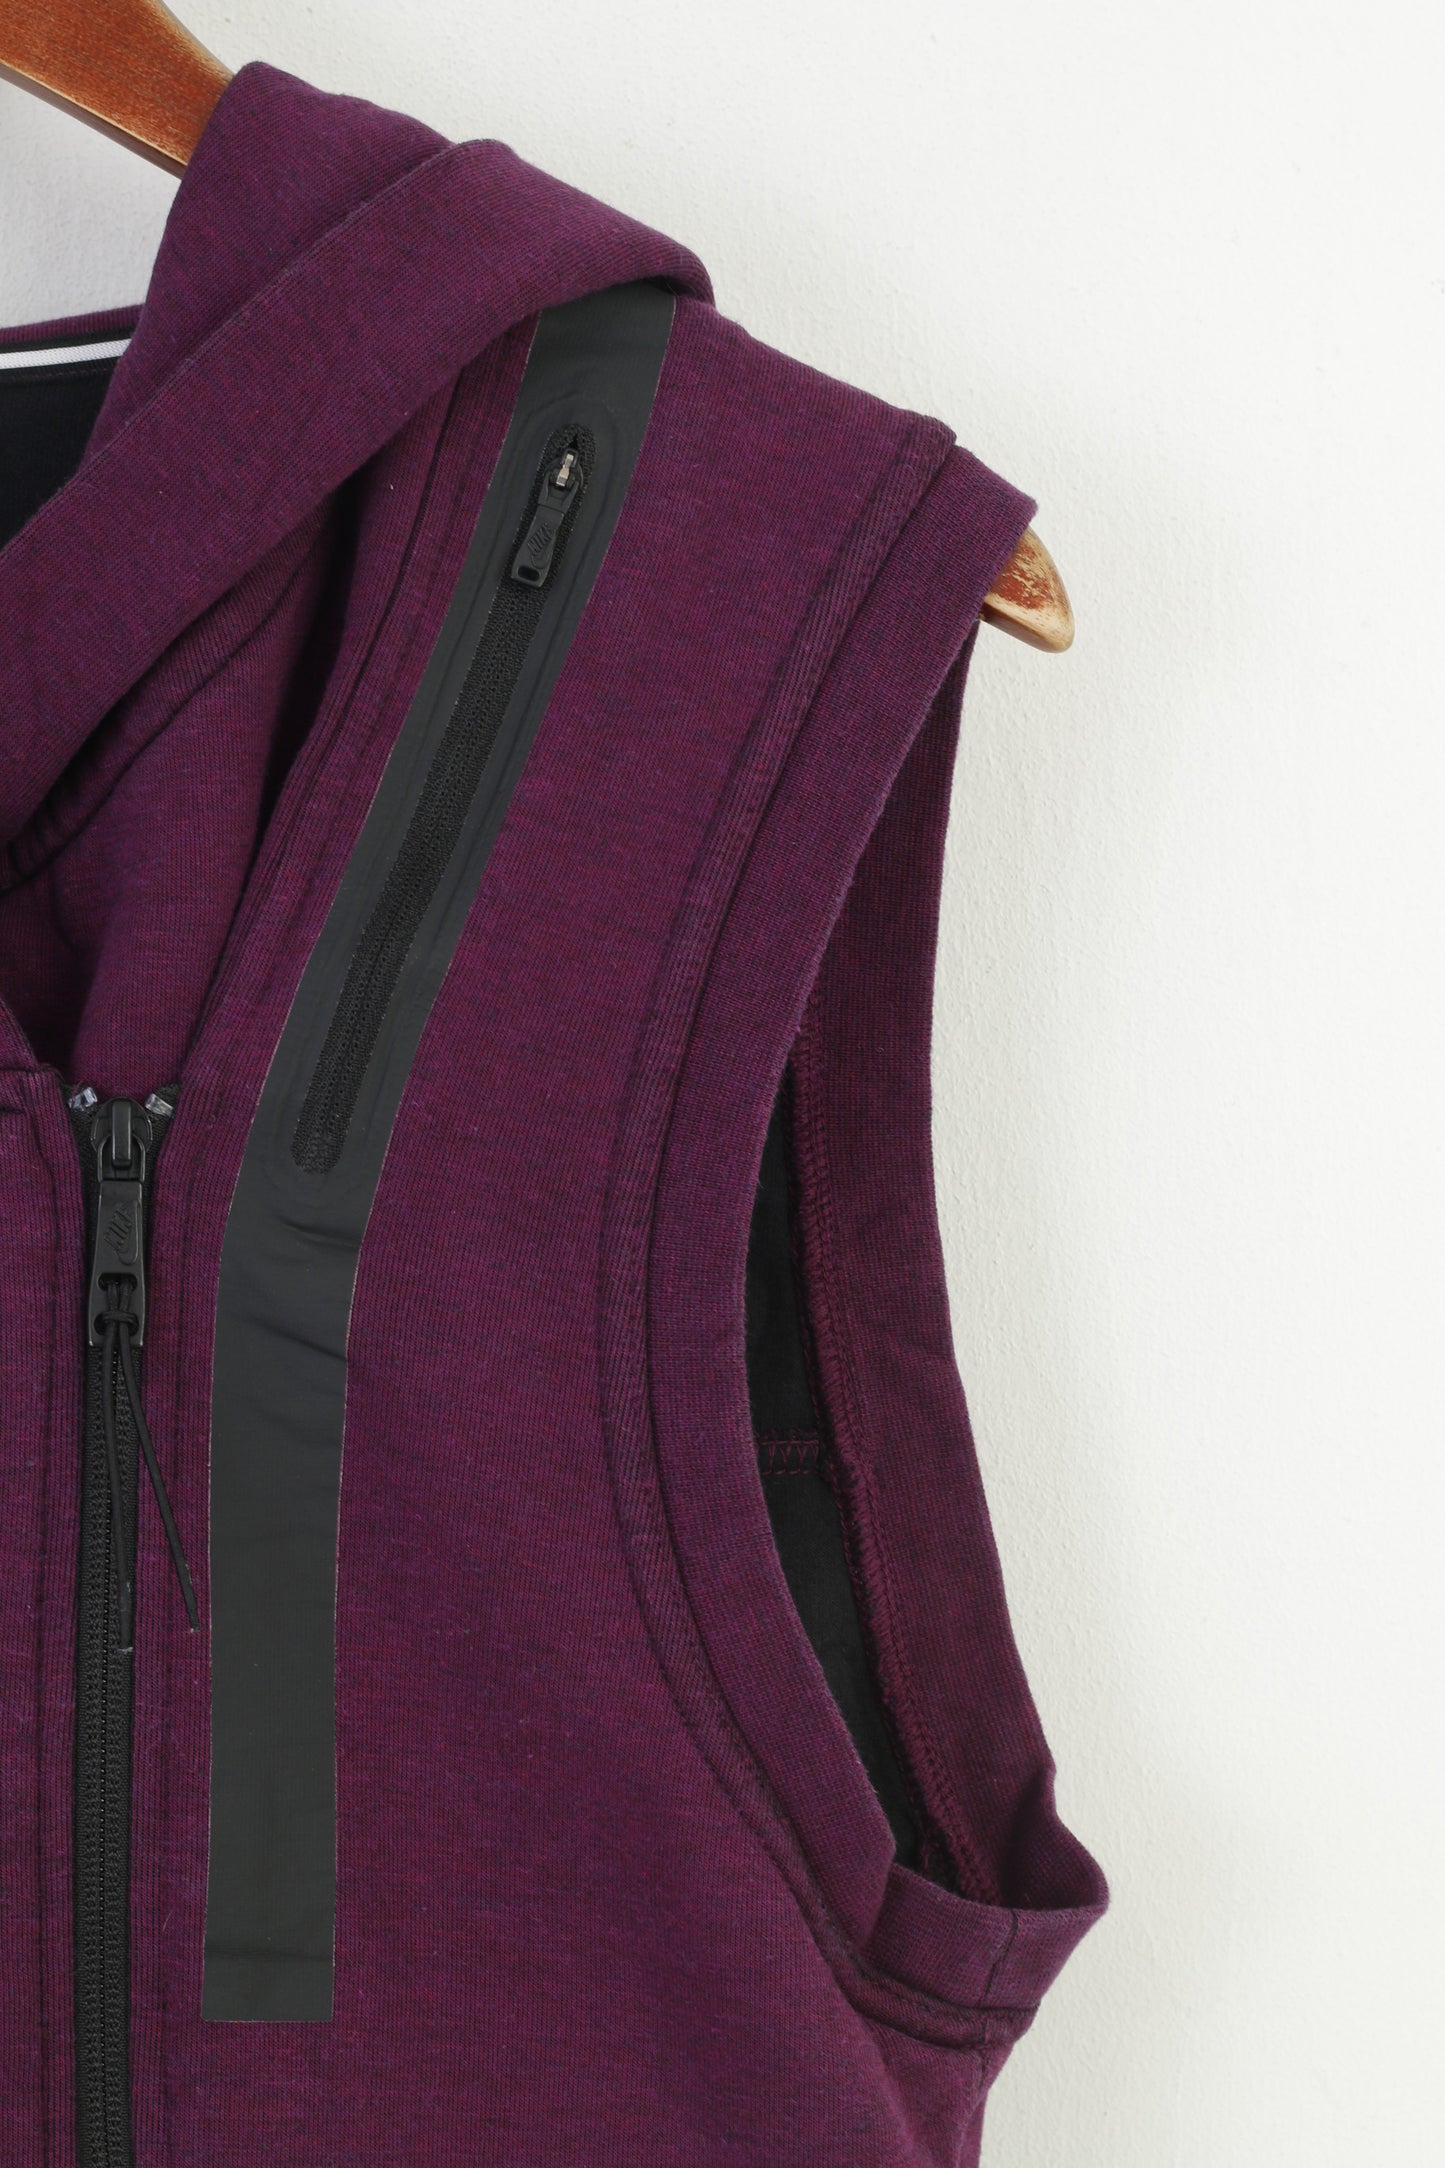 Nike Women M Vest Bodywarmer Hooded Purple Full Zipper Sportswear Pockets Outwear Cotton Vintage Top